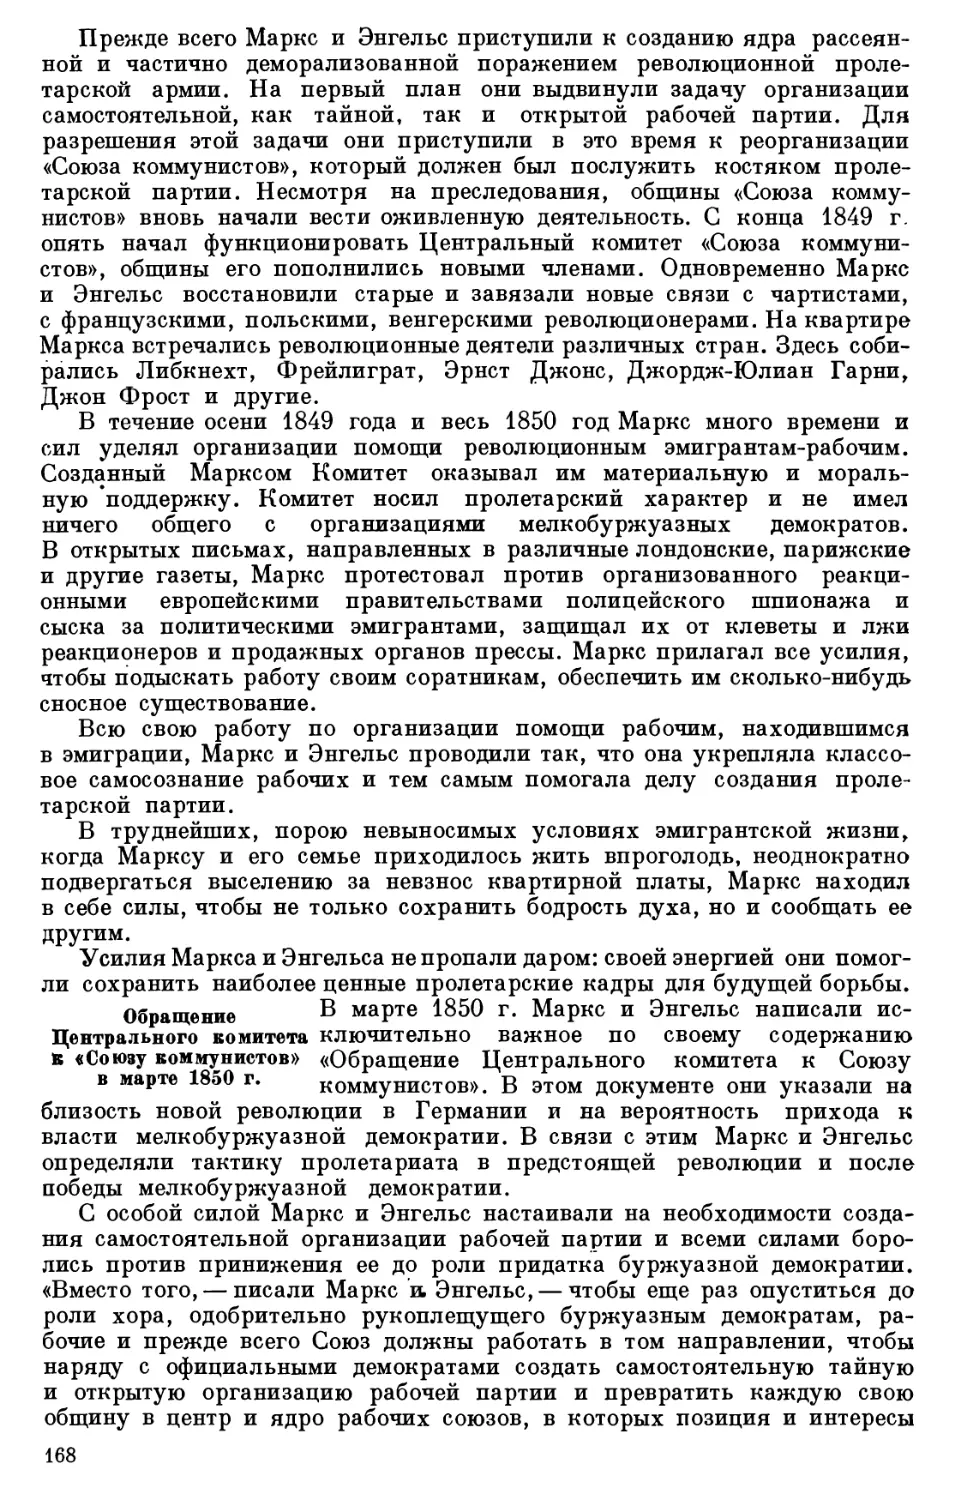 Обращение Центрального комитета к «Союзу коммунистов» в марте 1850 г.